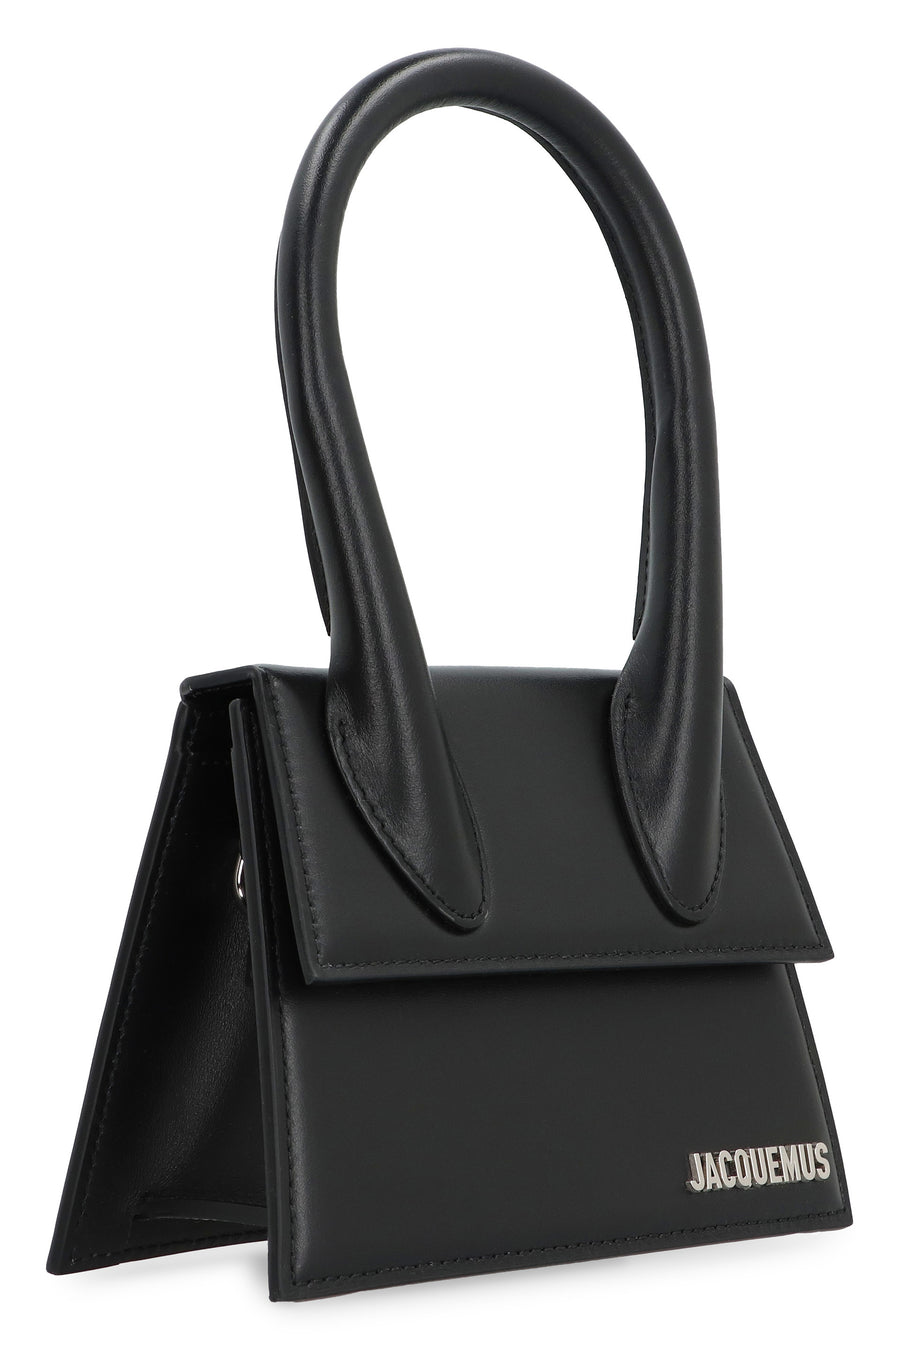 Le Chiquito Moyen Bag - Jacquemus - Black - Leather